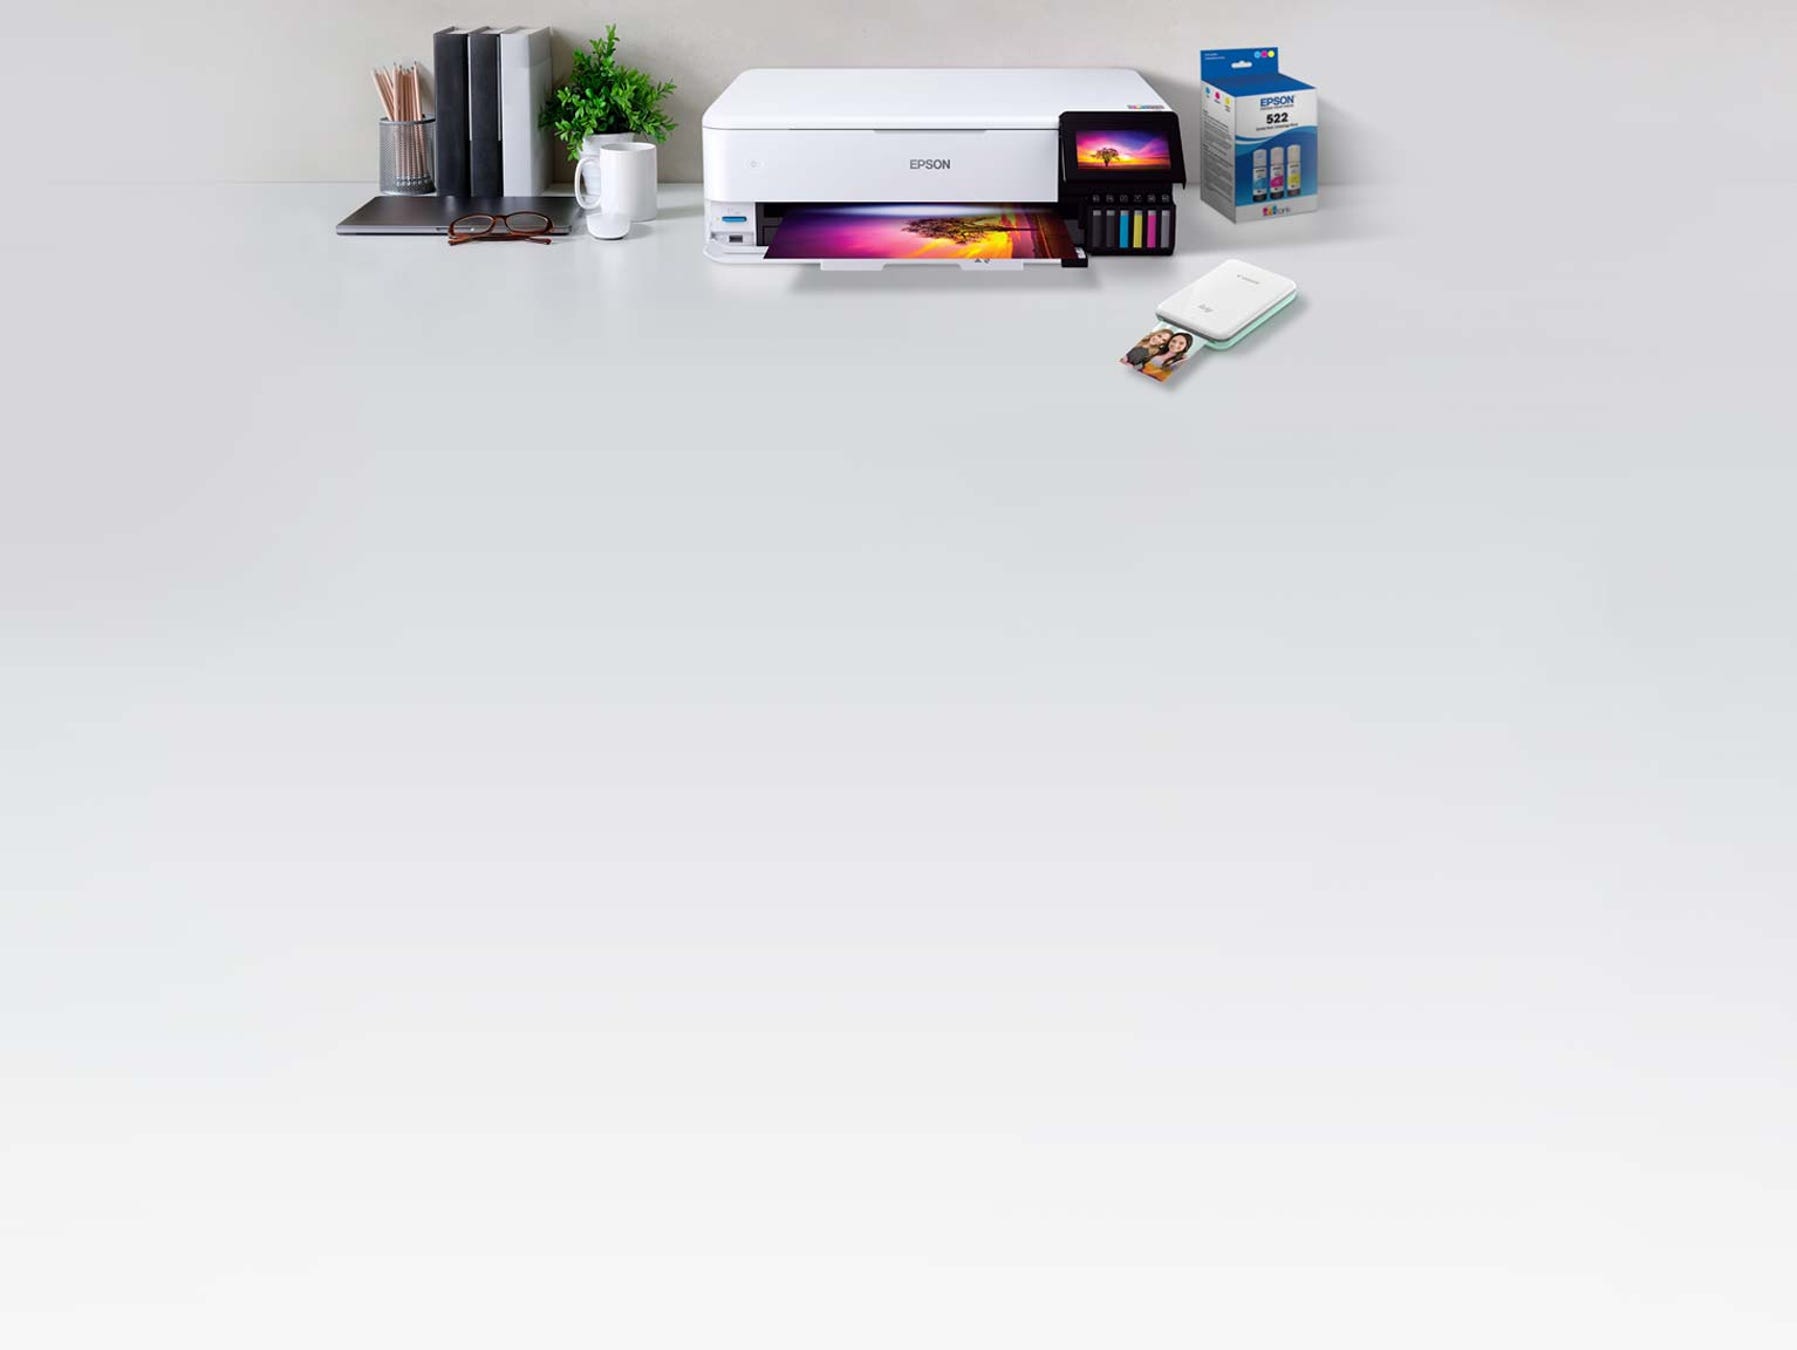 Mini imprimante électrique portable Imprimante de poche auto-adhésive à  domicile pour étiquette de prix de marque